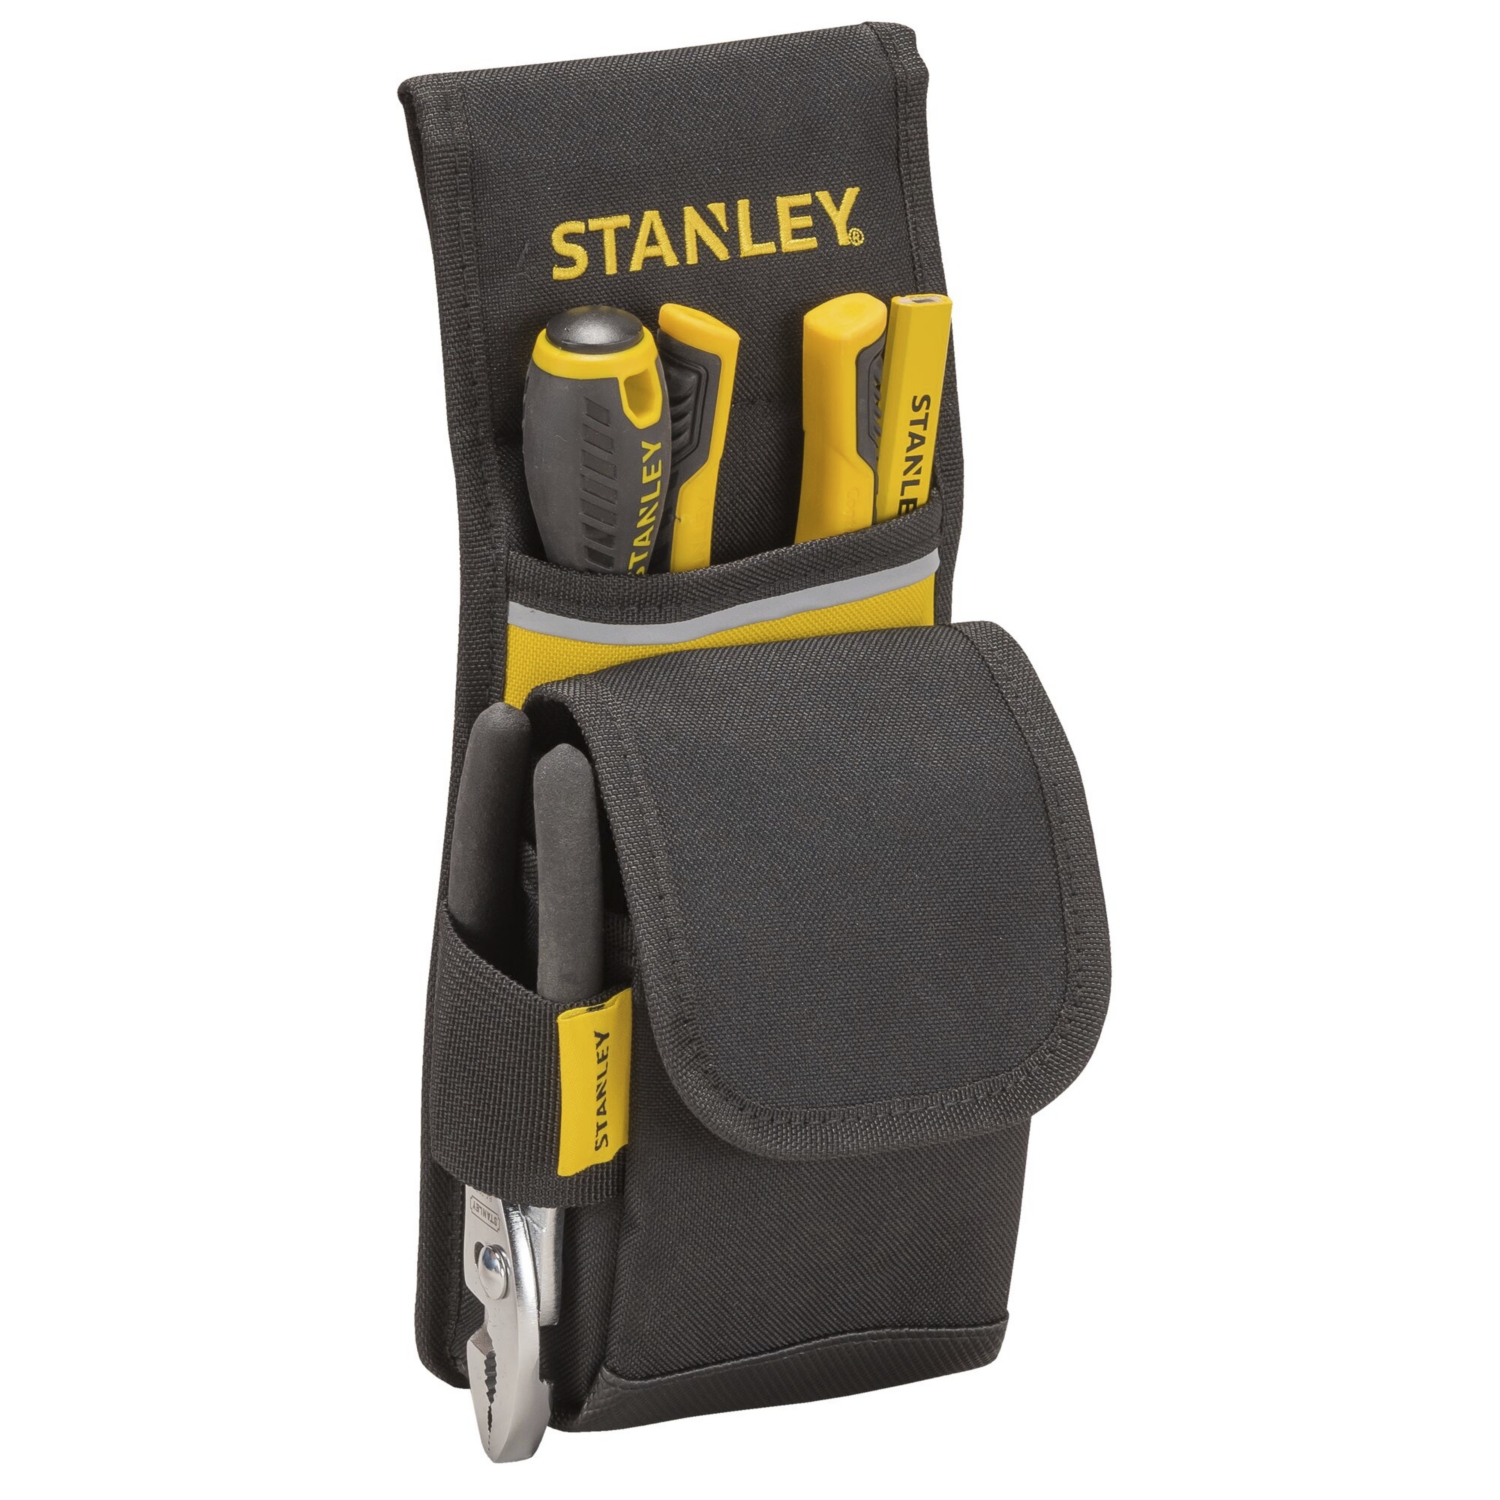 Porte-outils de ceinture 4 compartiments - Stanley 